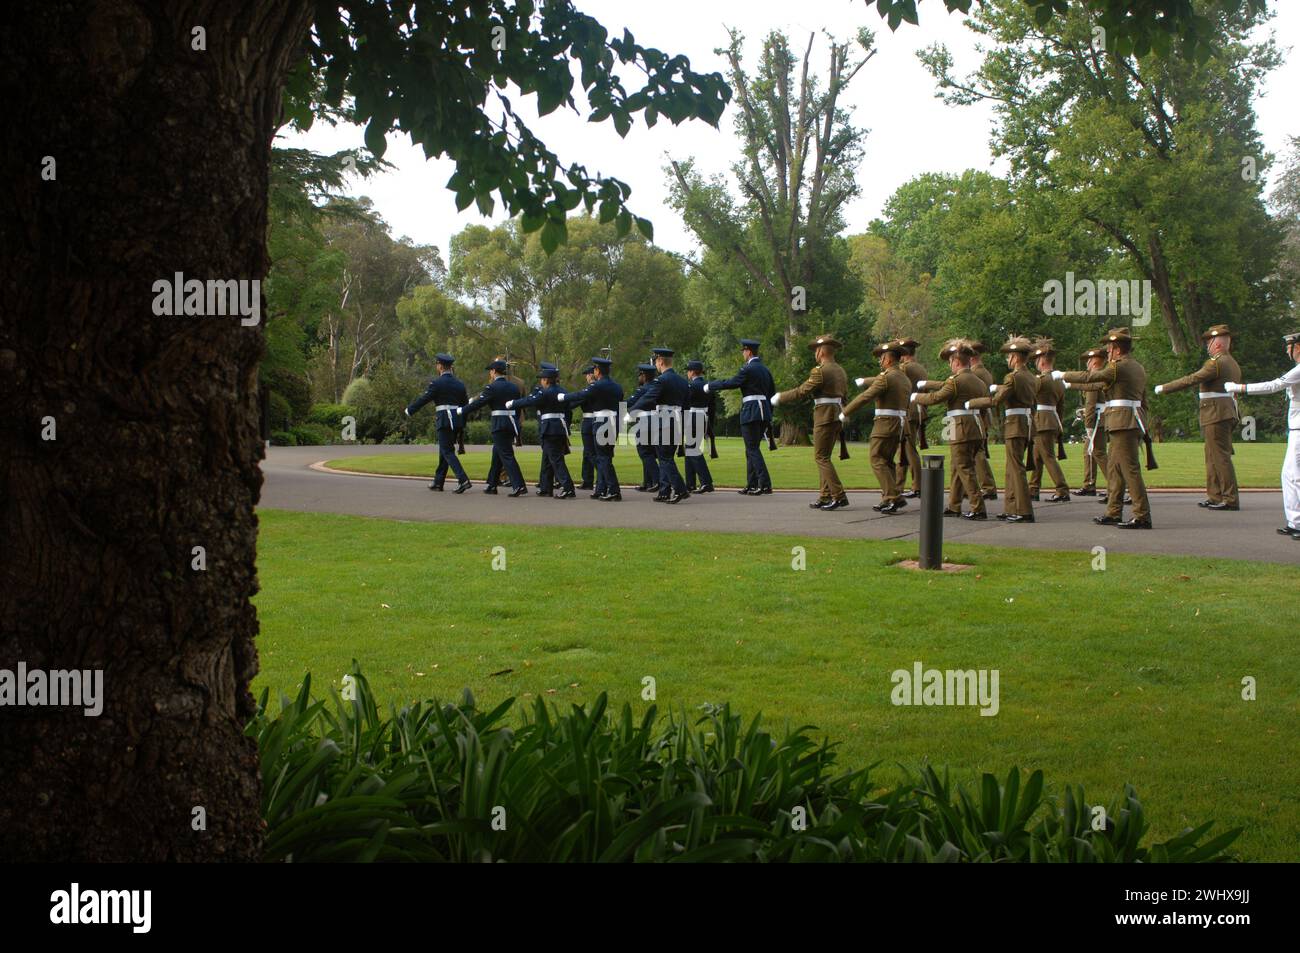 Guardia armada del Sr. Pierre-André Imbert, Embajador de Francia, para presentar sus cartas de crédito en la Casa de Gobierno, Canberra, ACT, Australia. Foto de stock